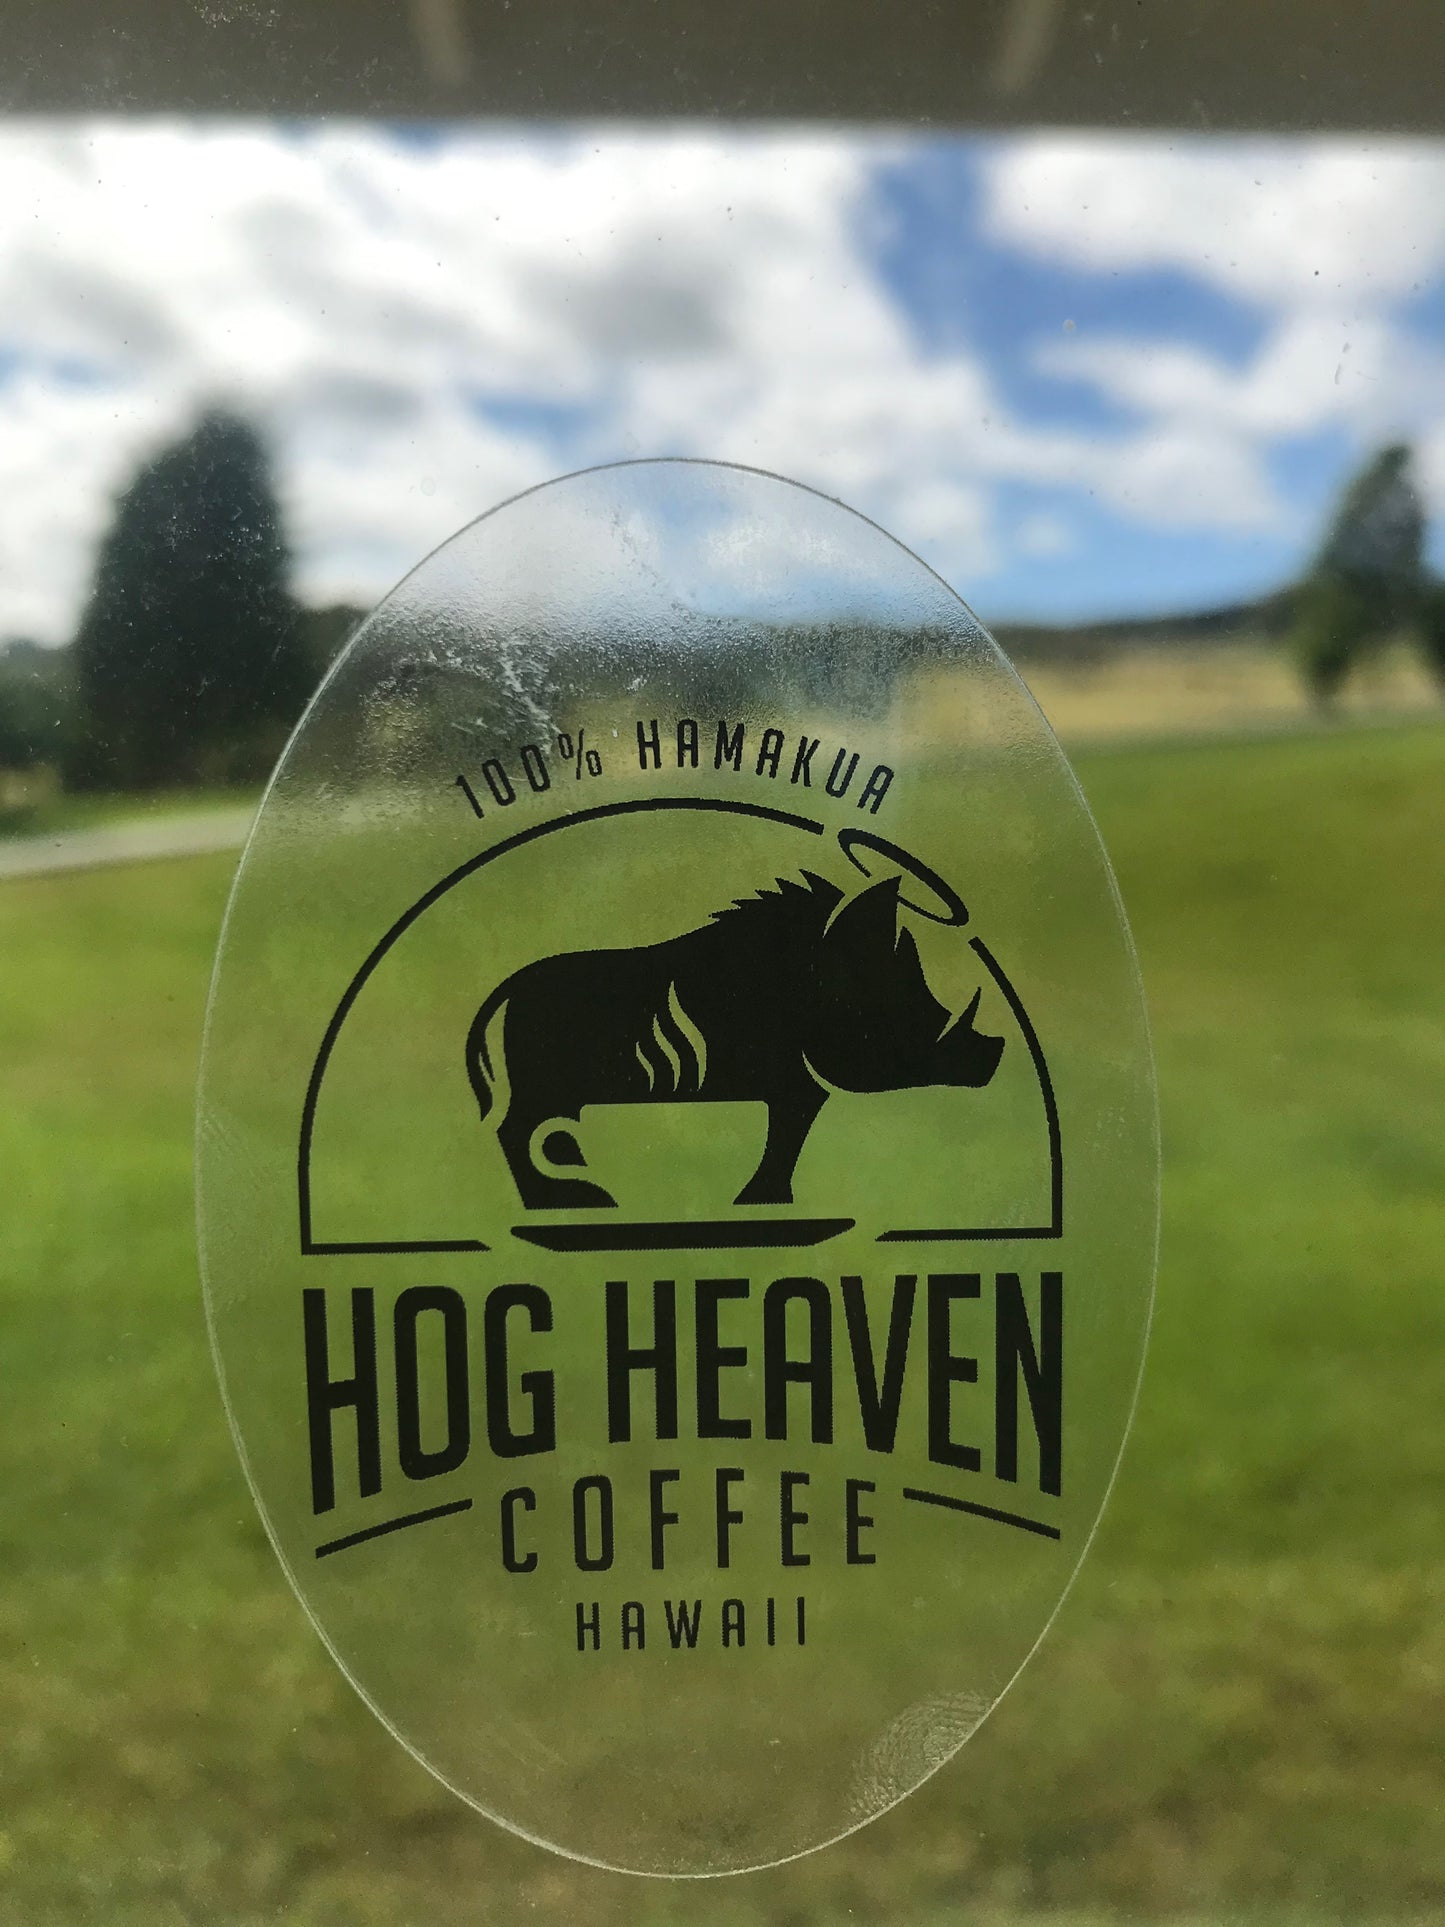 clear hog heaven coffee sticker on window